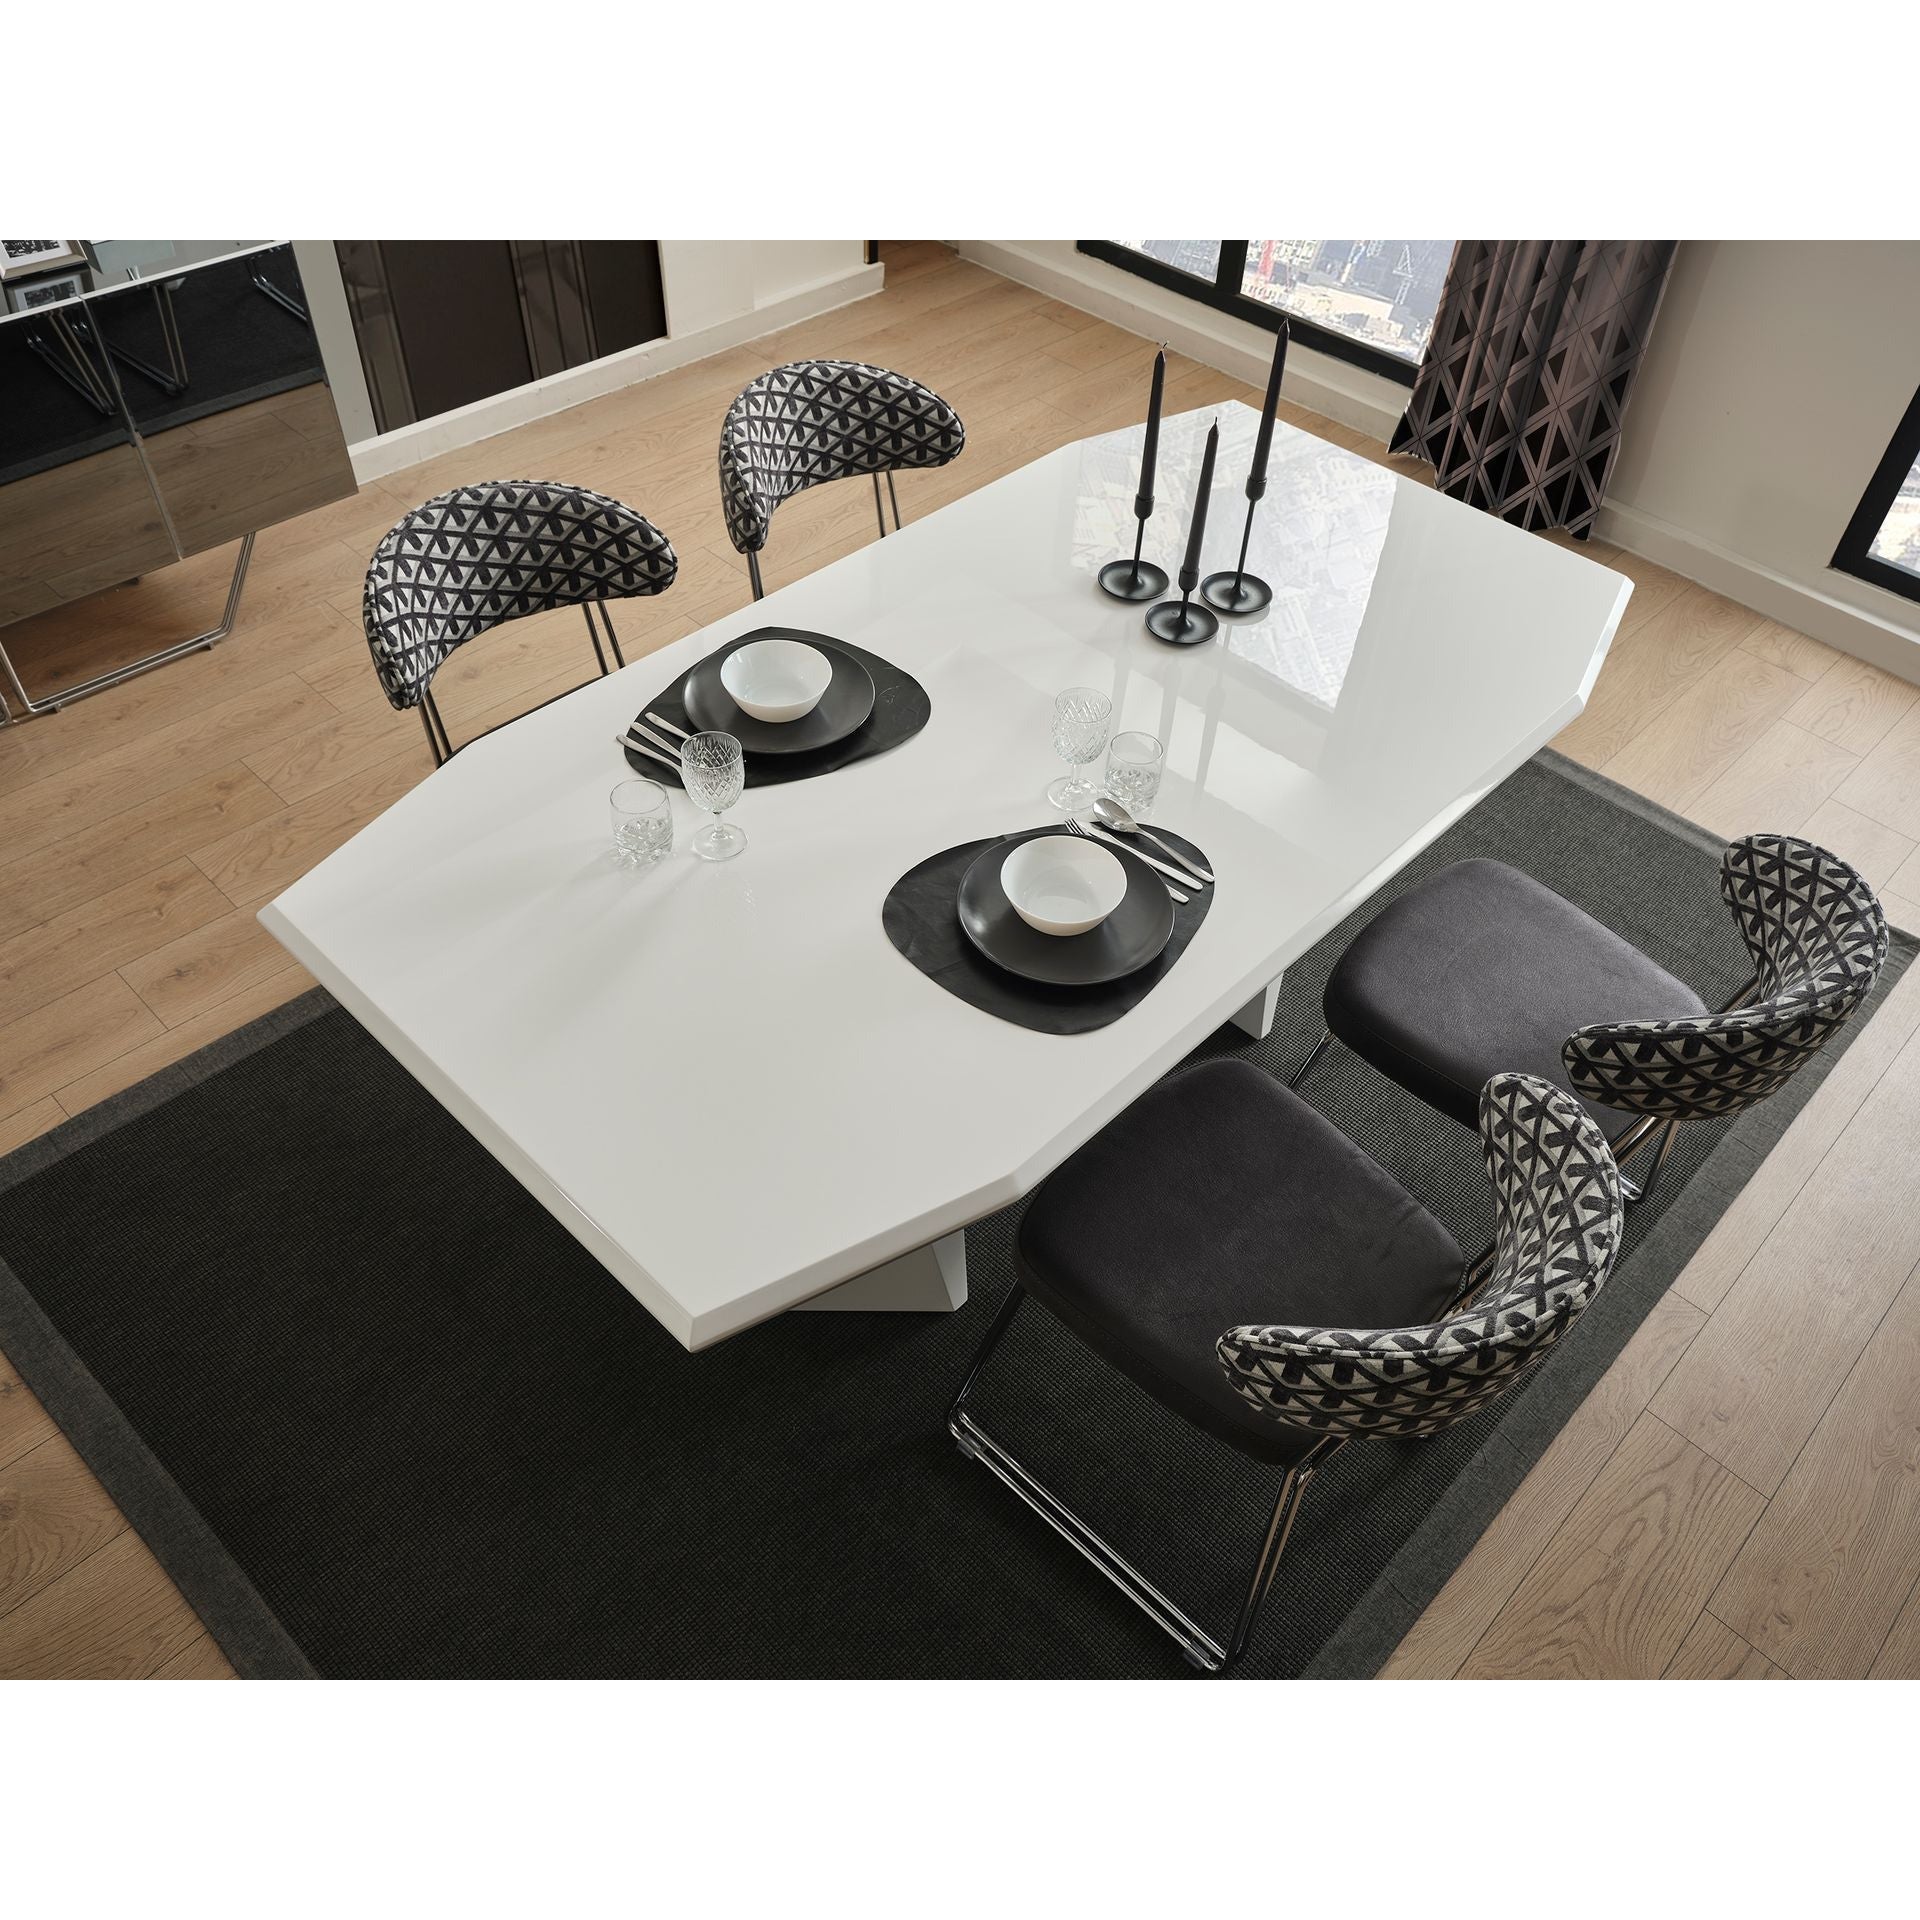 Koza Skänk - LINE Furniture Group